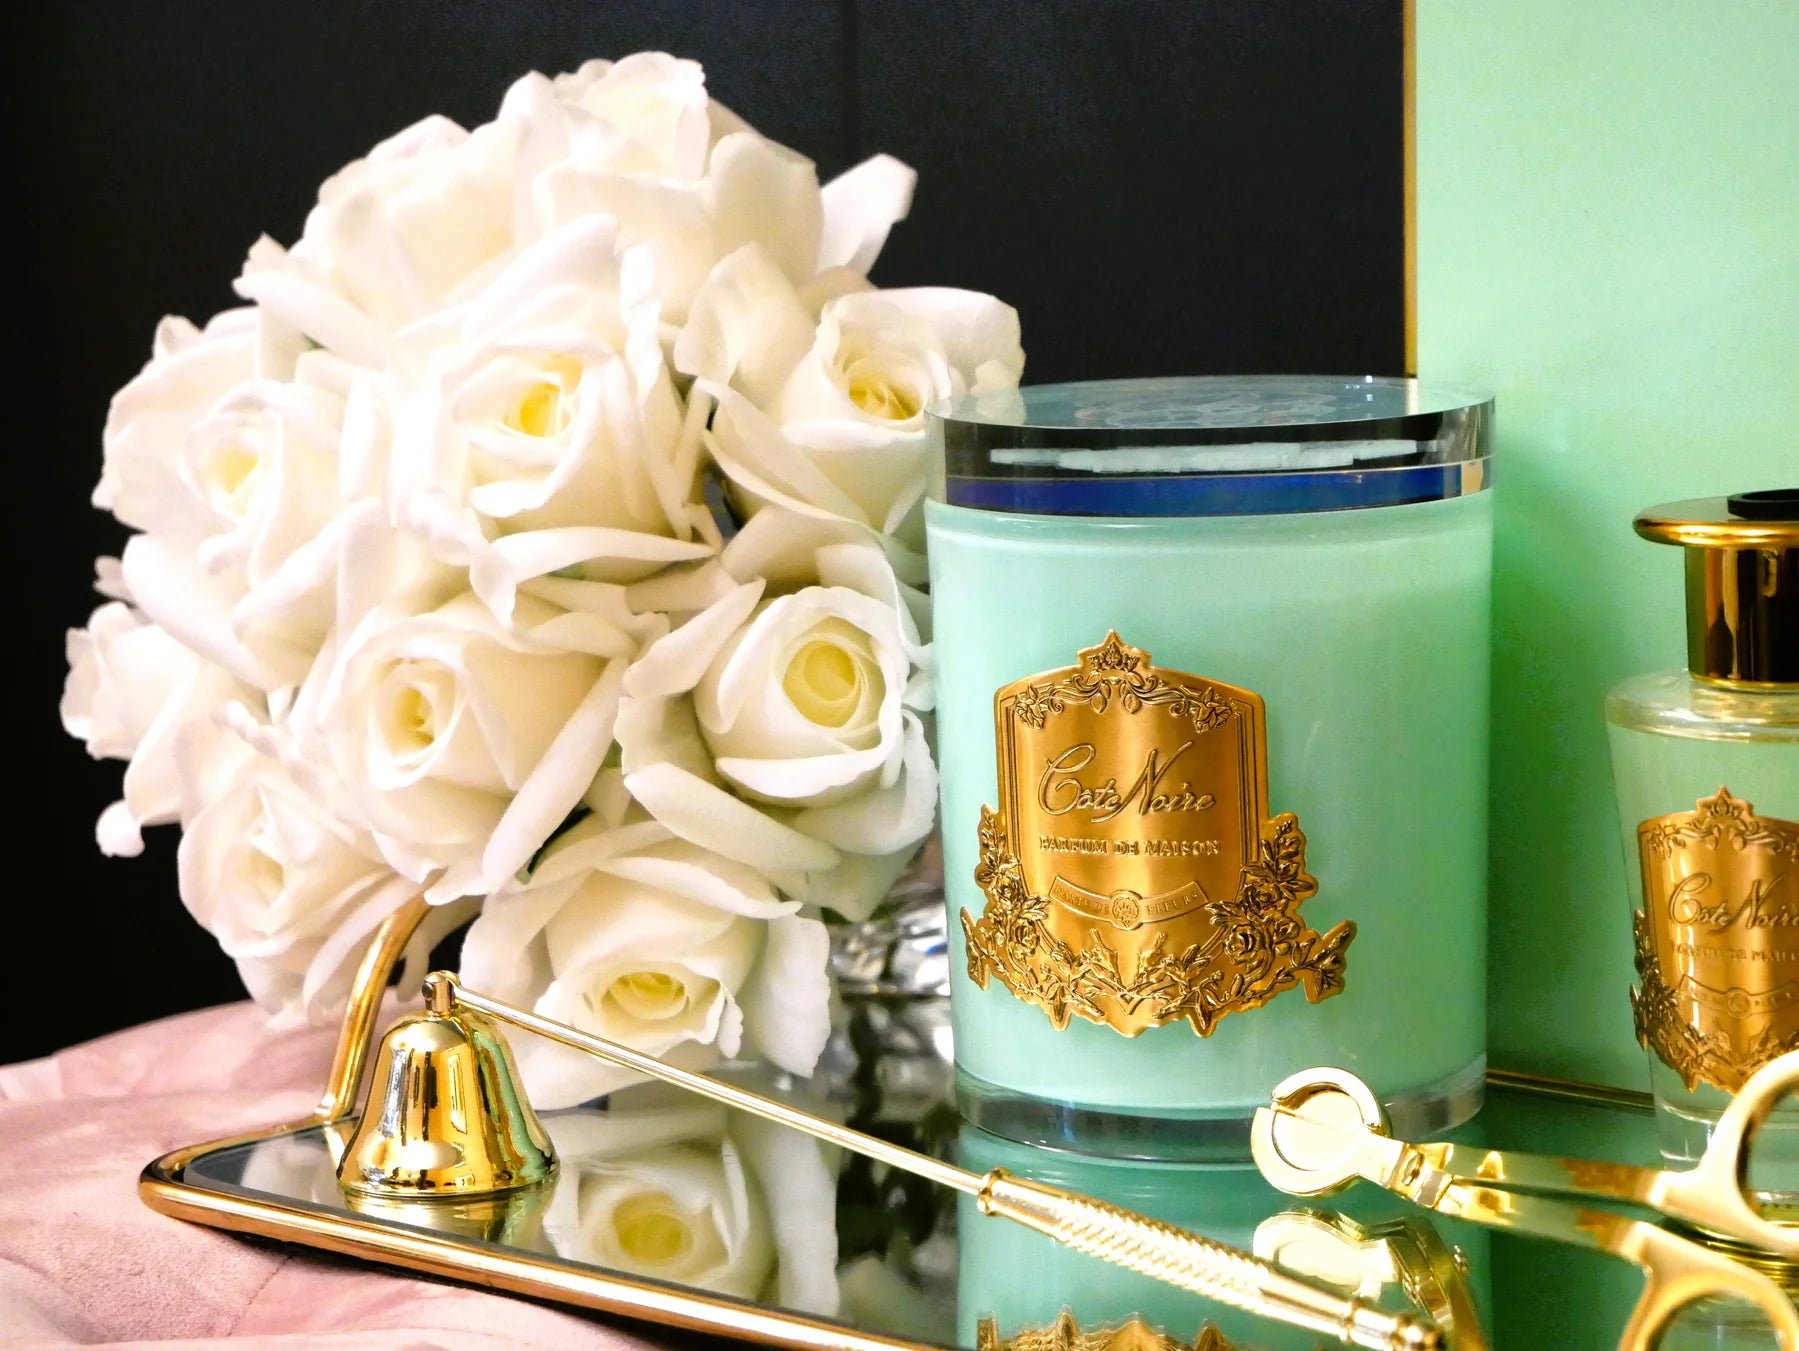 duftkerze in jade gruenem glas mit goldener inschrift und glasdeckel neben weissen rosen vor schwarzem hintergrund.